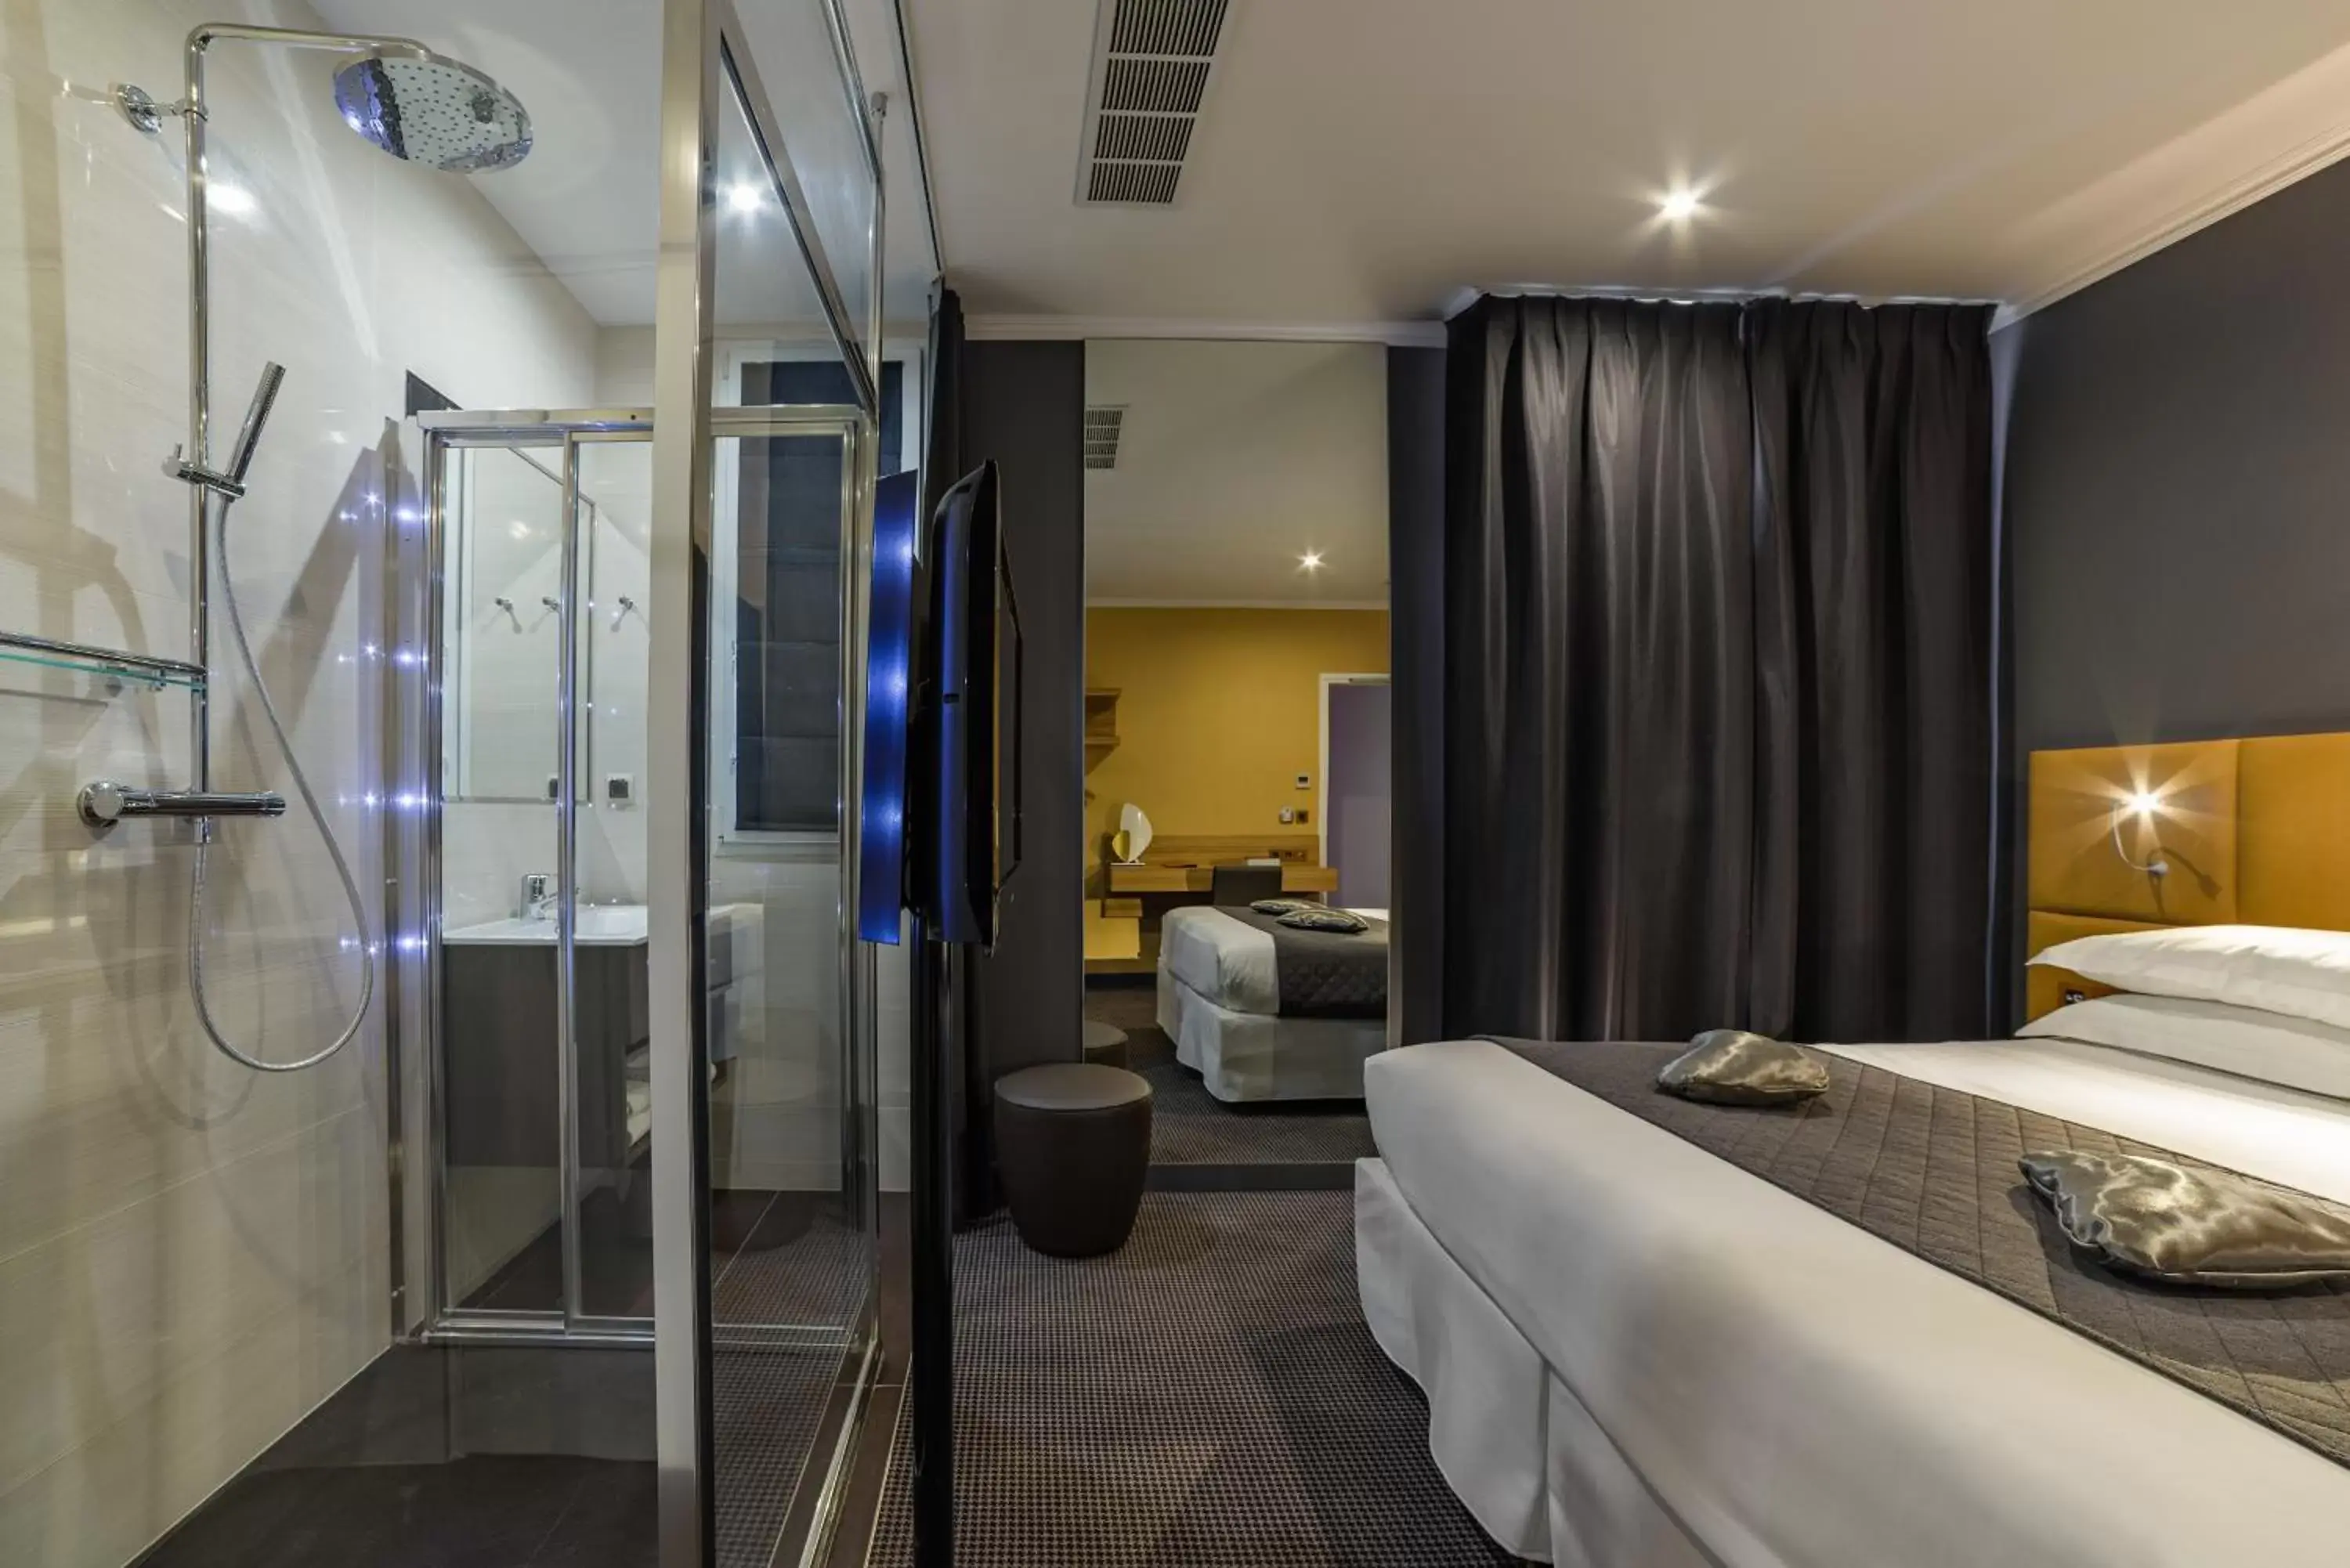 Bedroom, Bathroom in Hotel Residence Europe & Spa